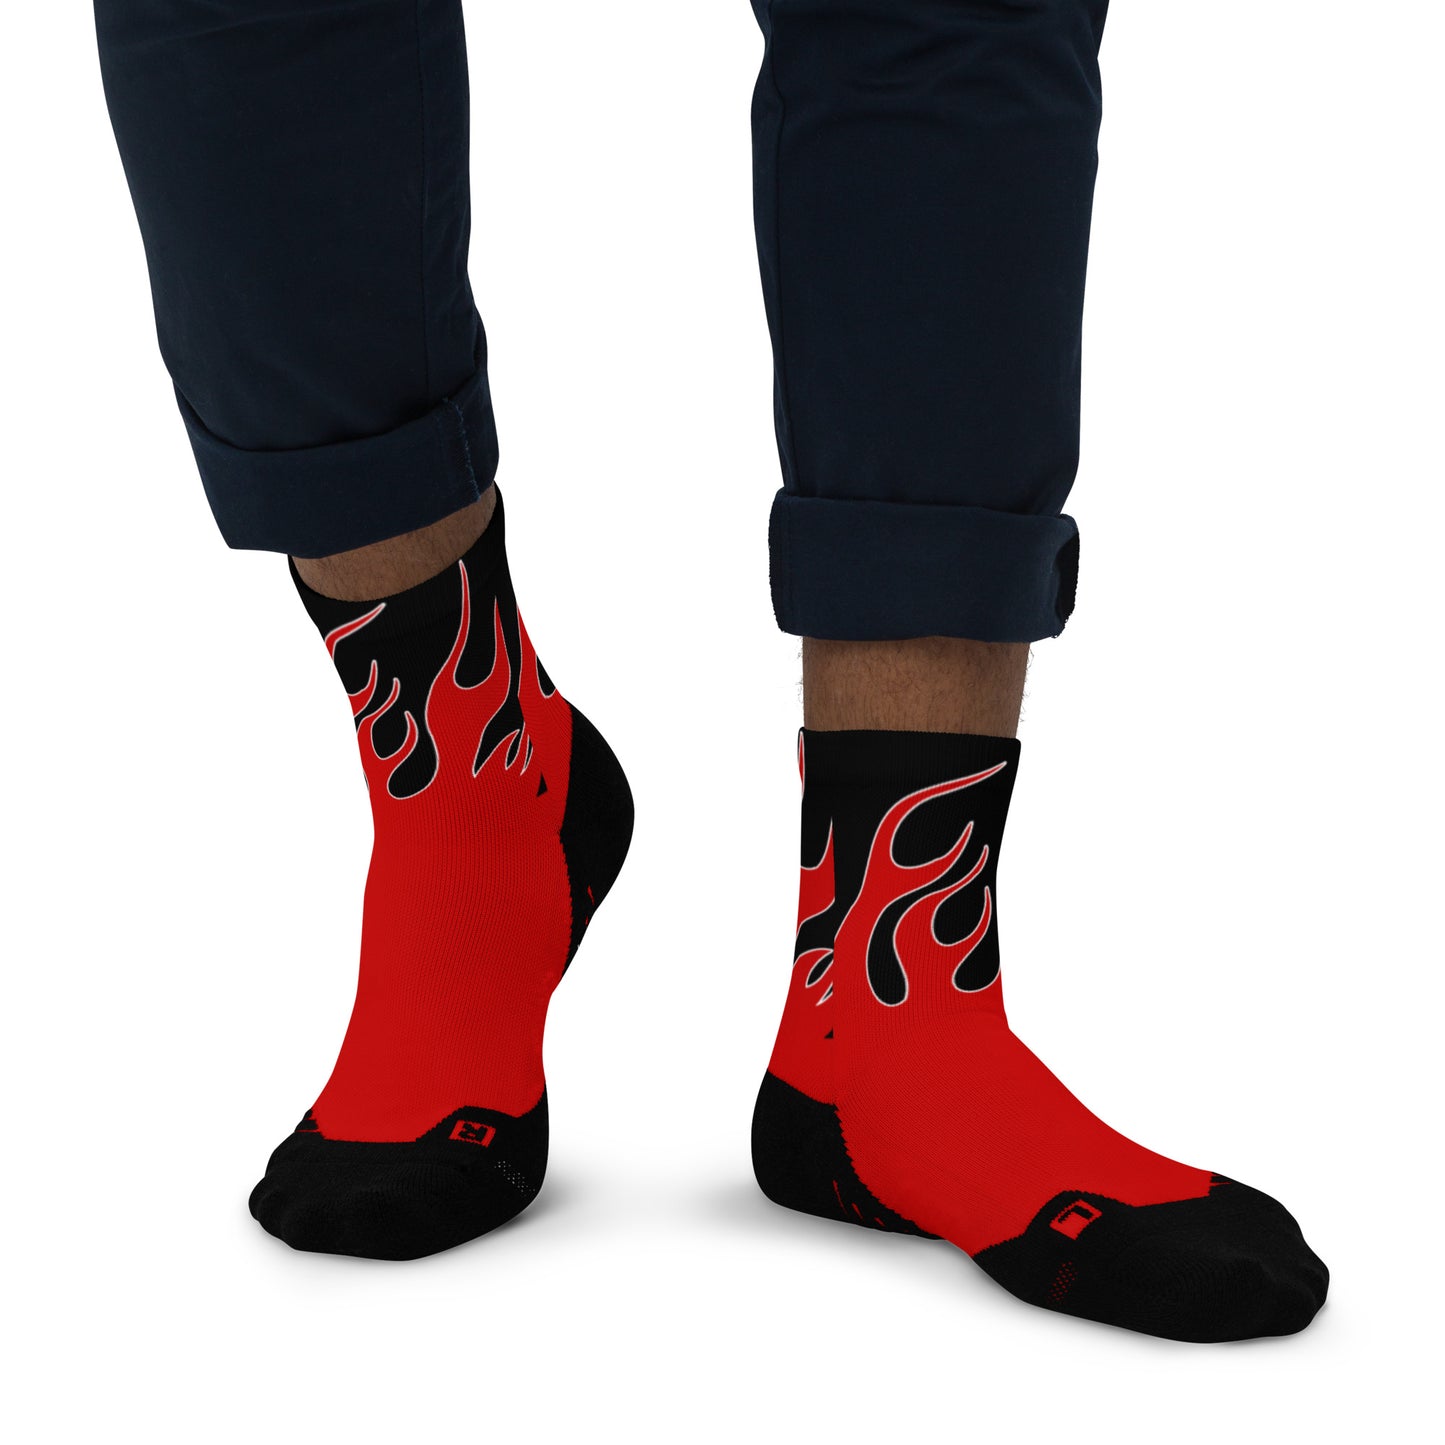 Fire Ankle Socks